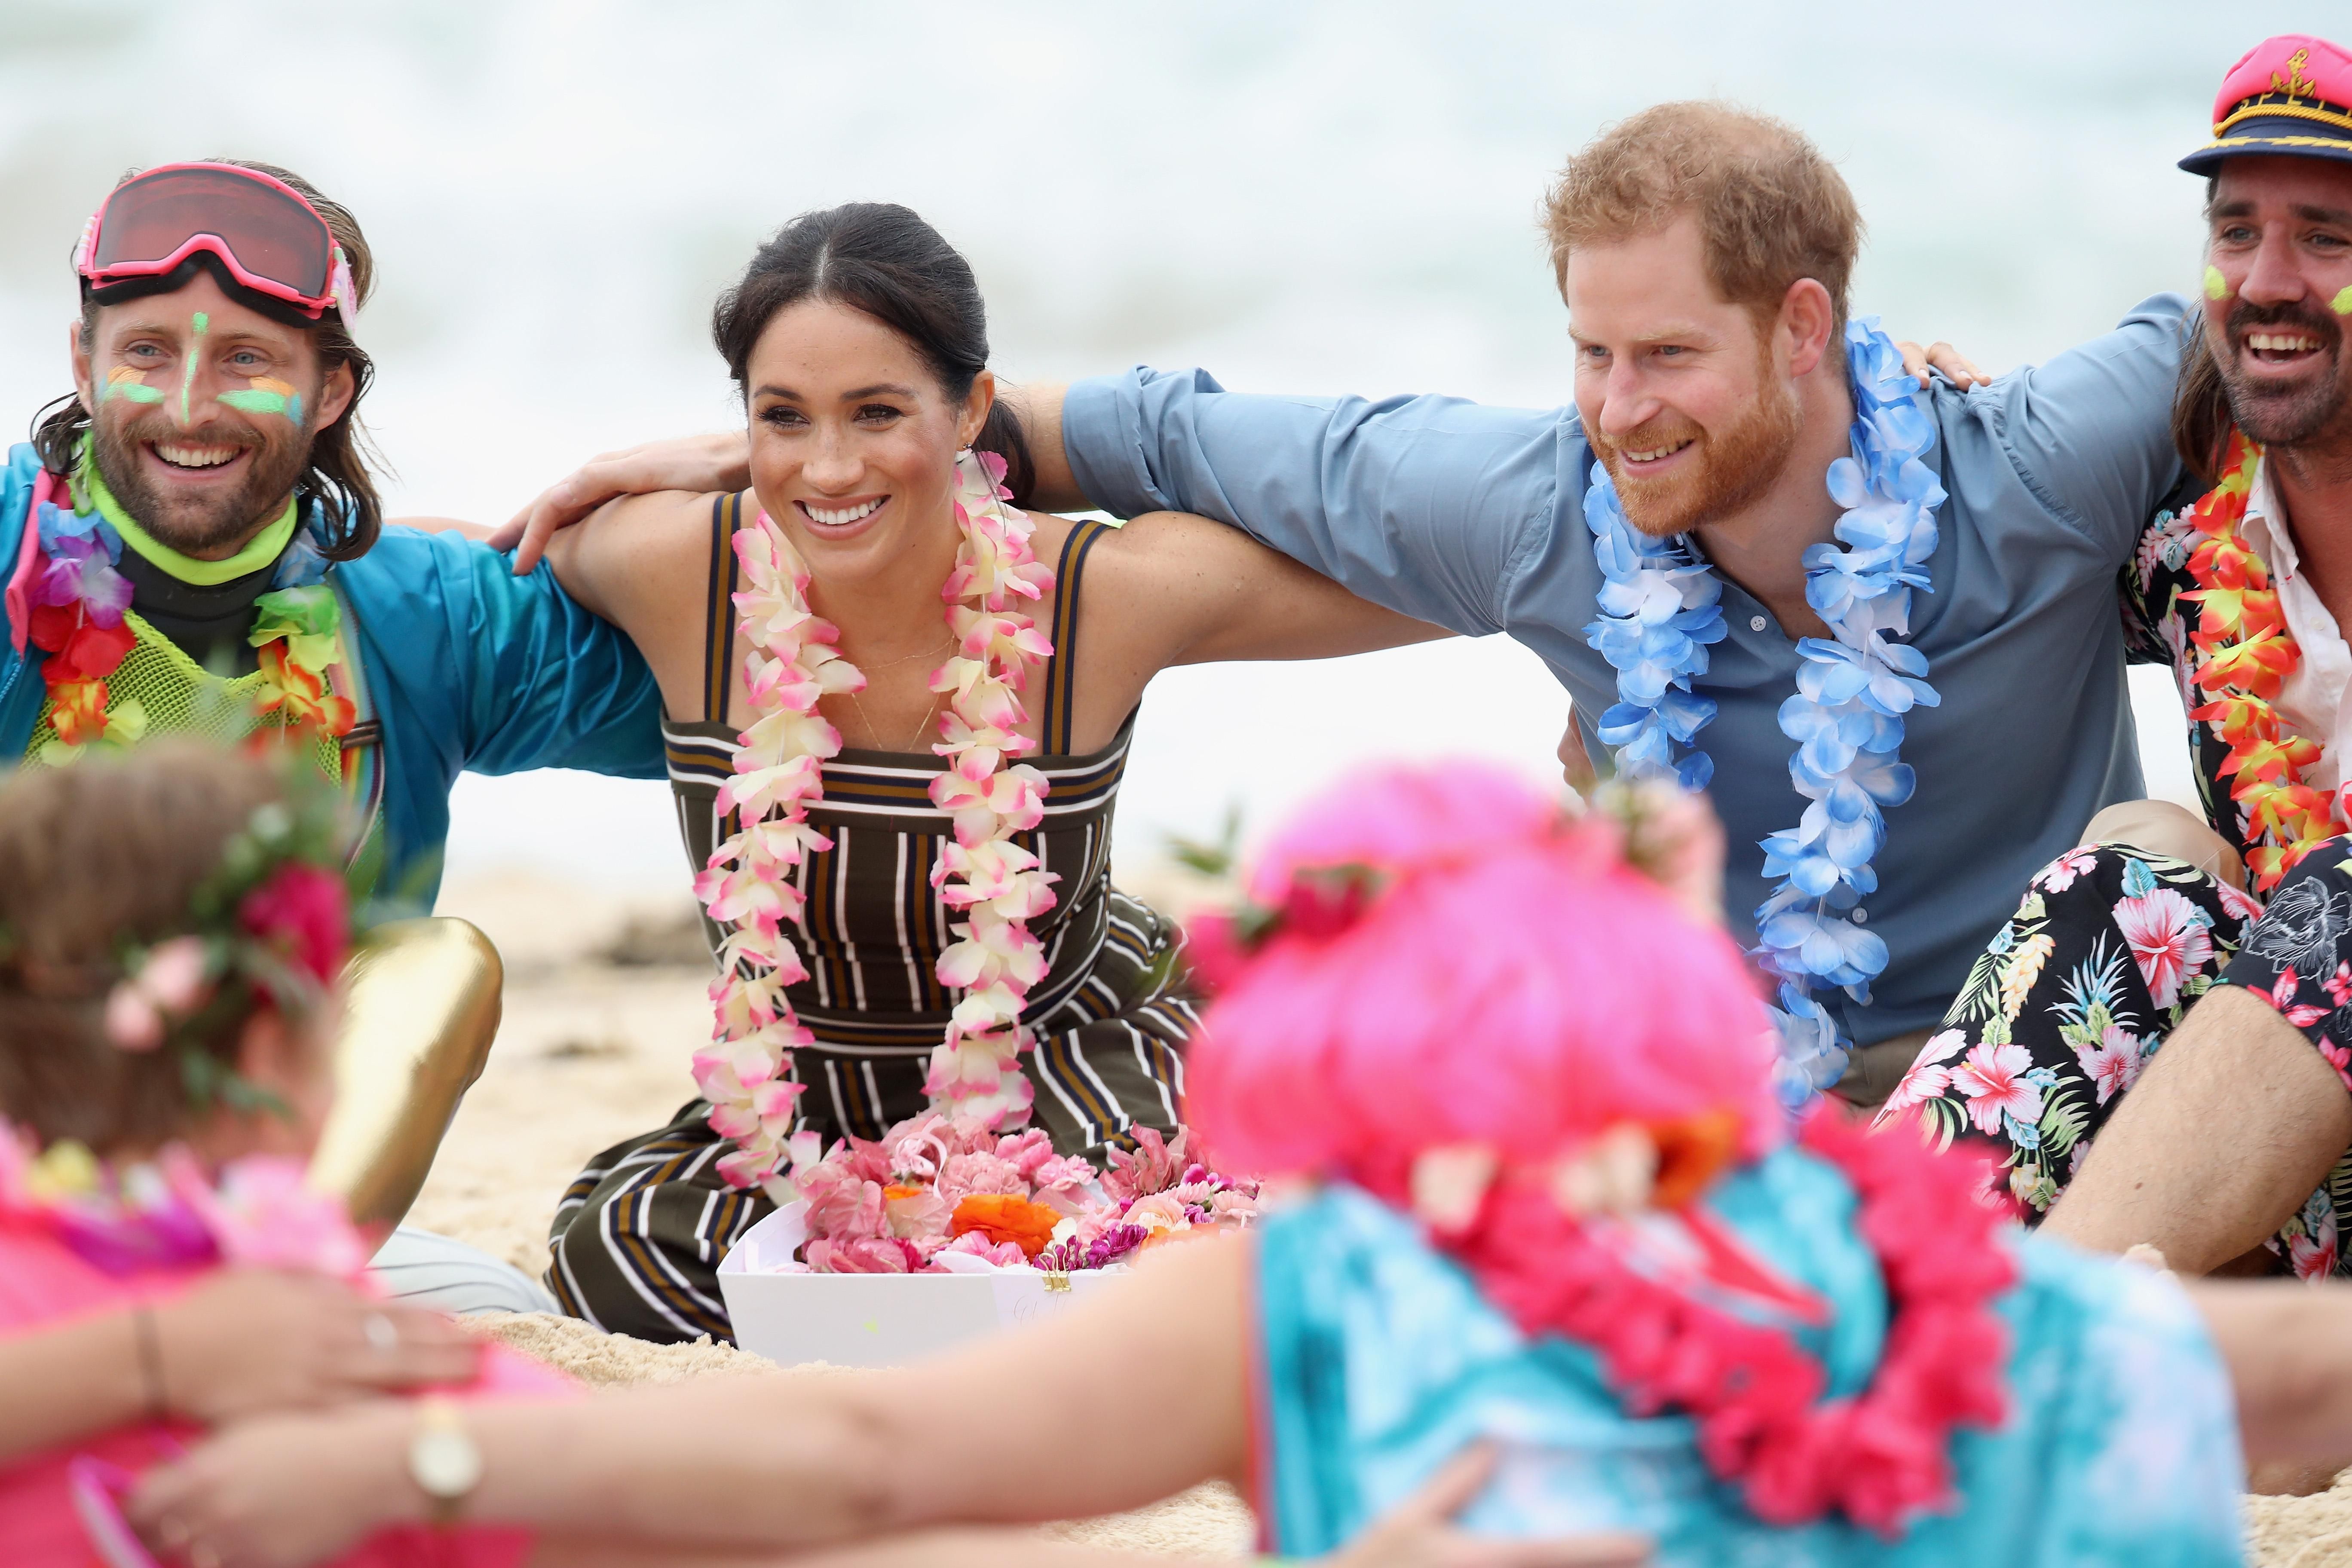 Гавайские бусы и сарафан в полоску: Меган Маркл и принц Гарри встретились с серферами на пляже